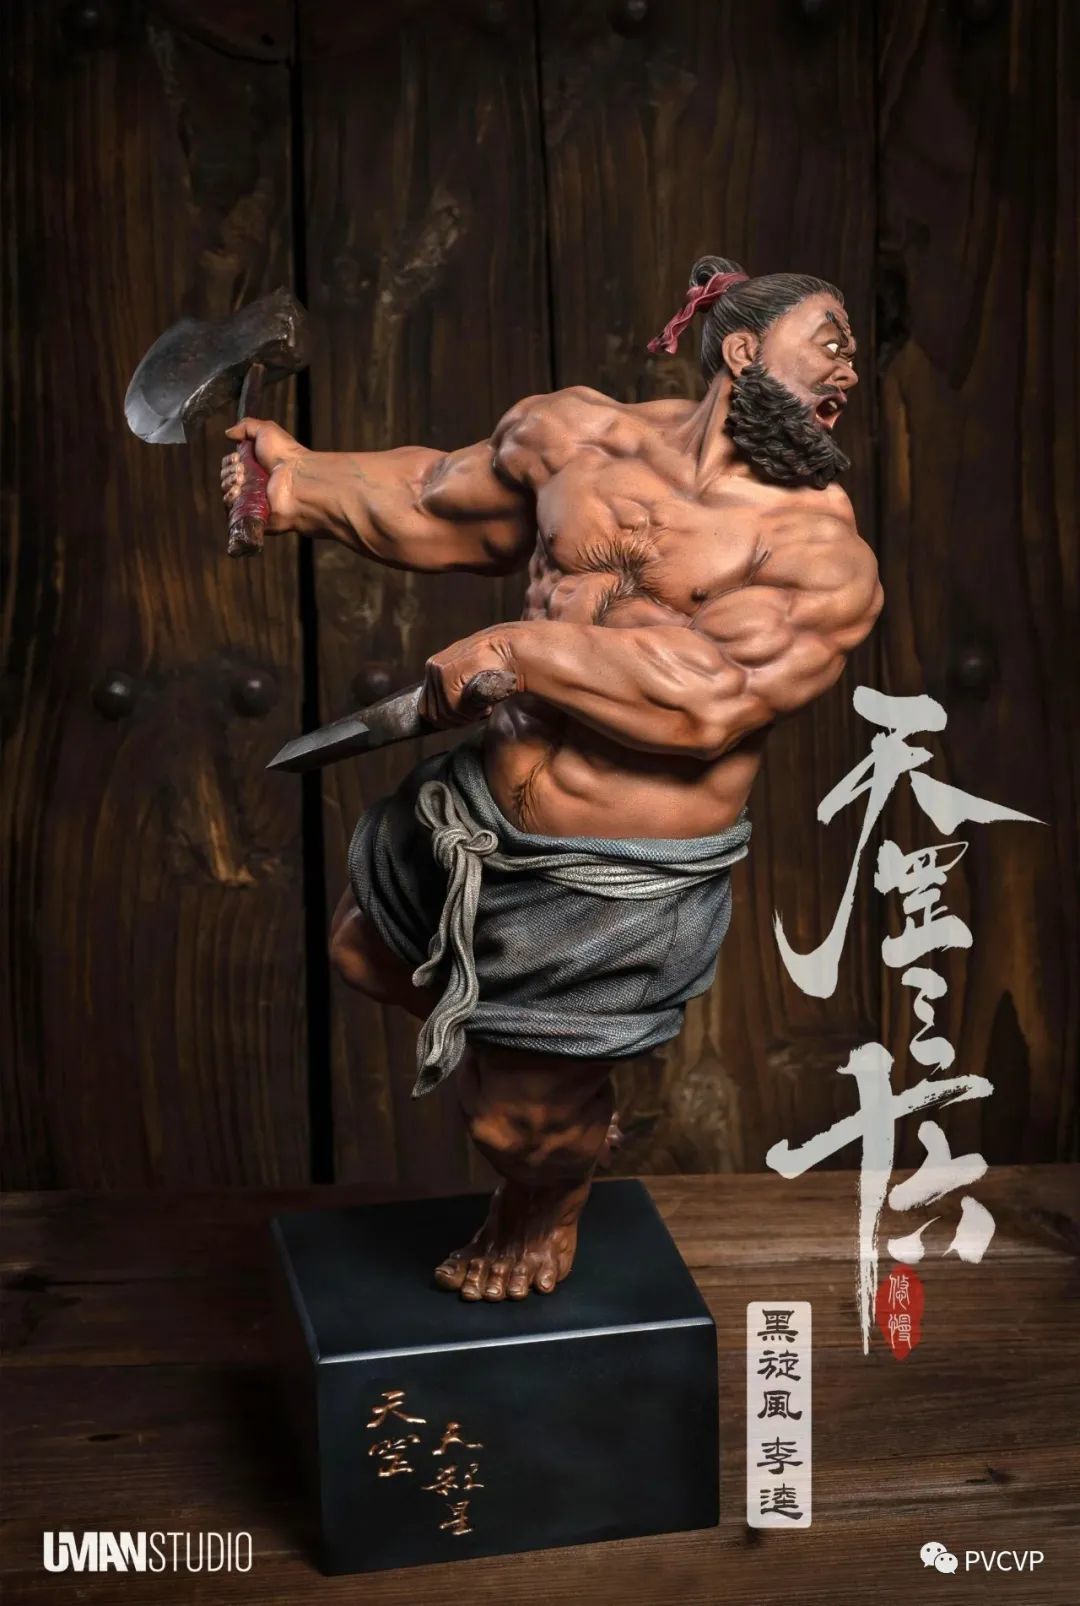 UMAN《水浒 · 天罡三十六》系列雕塑的创作，是对中国古典传统美学的鲜活演绎和致敬~